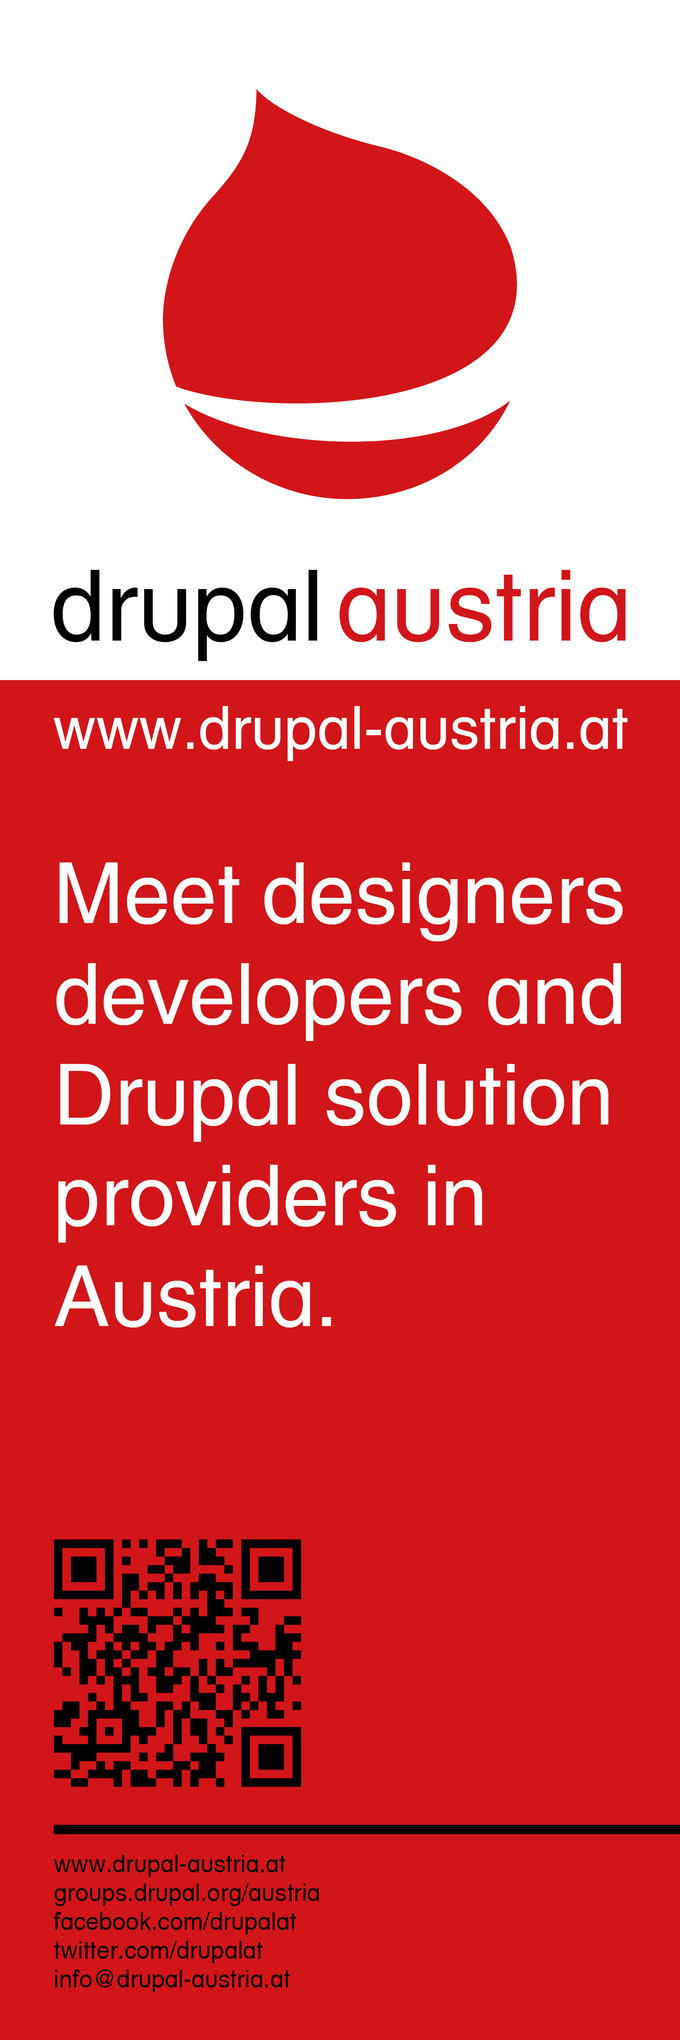 Drupal Austria Deckenhänger